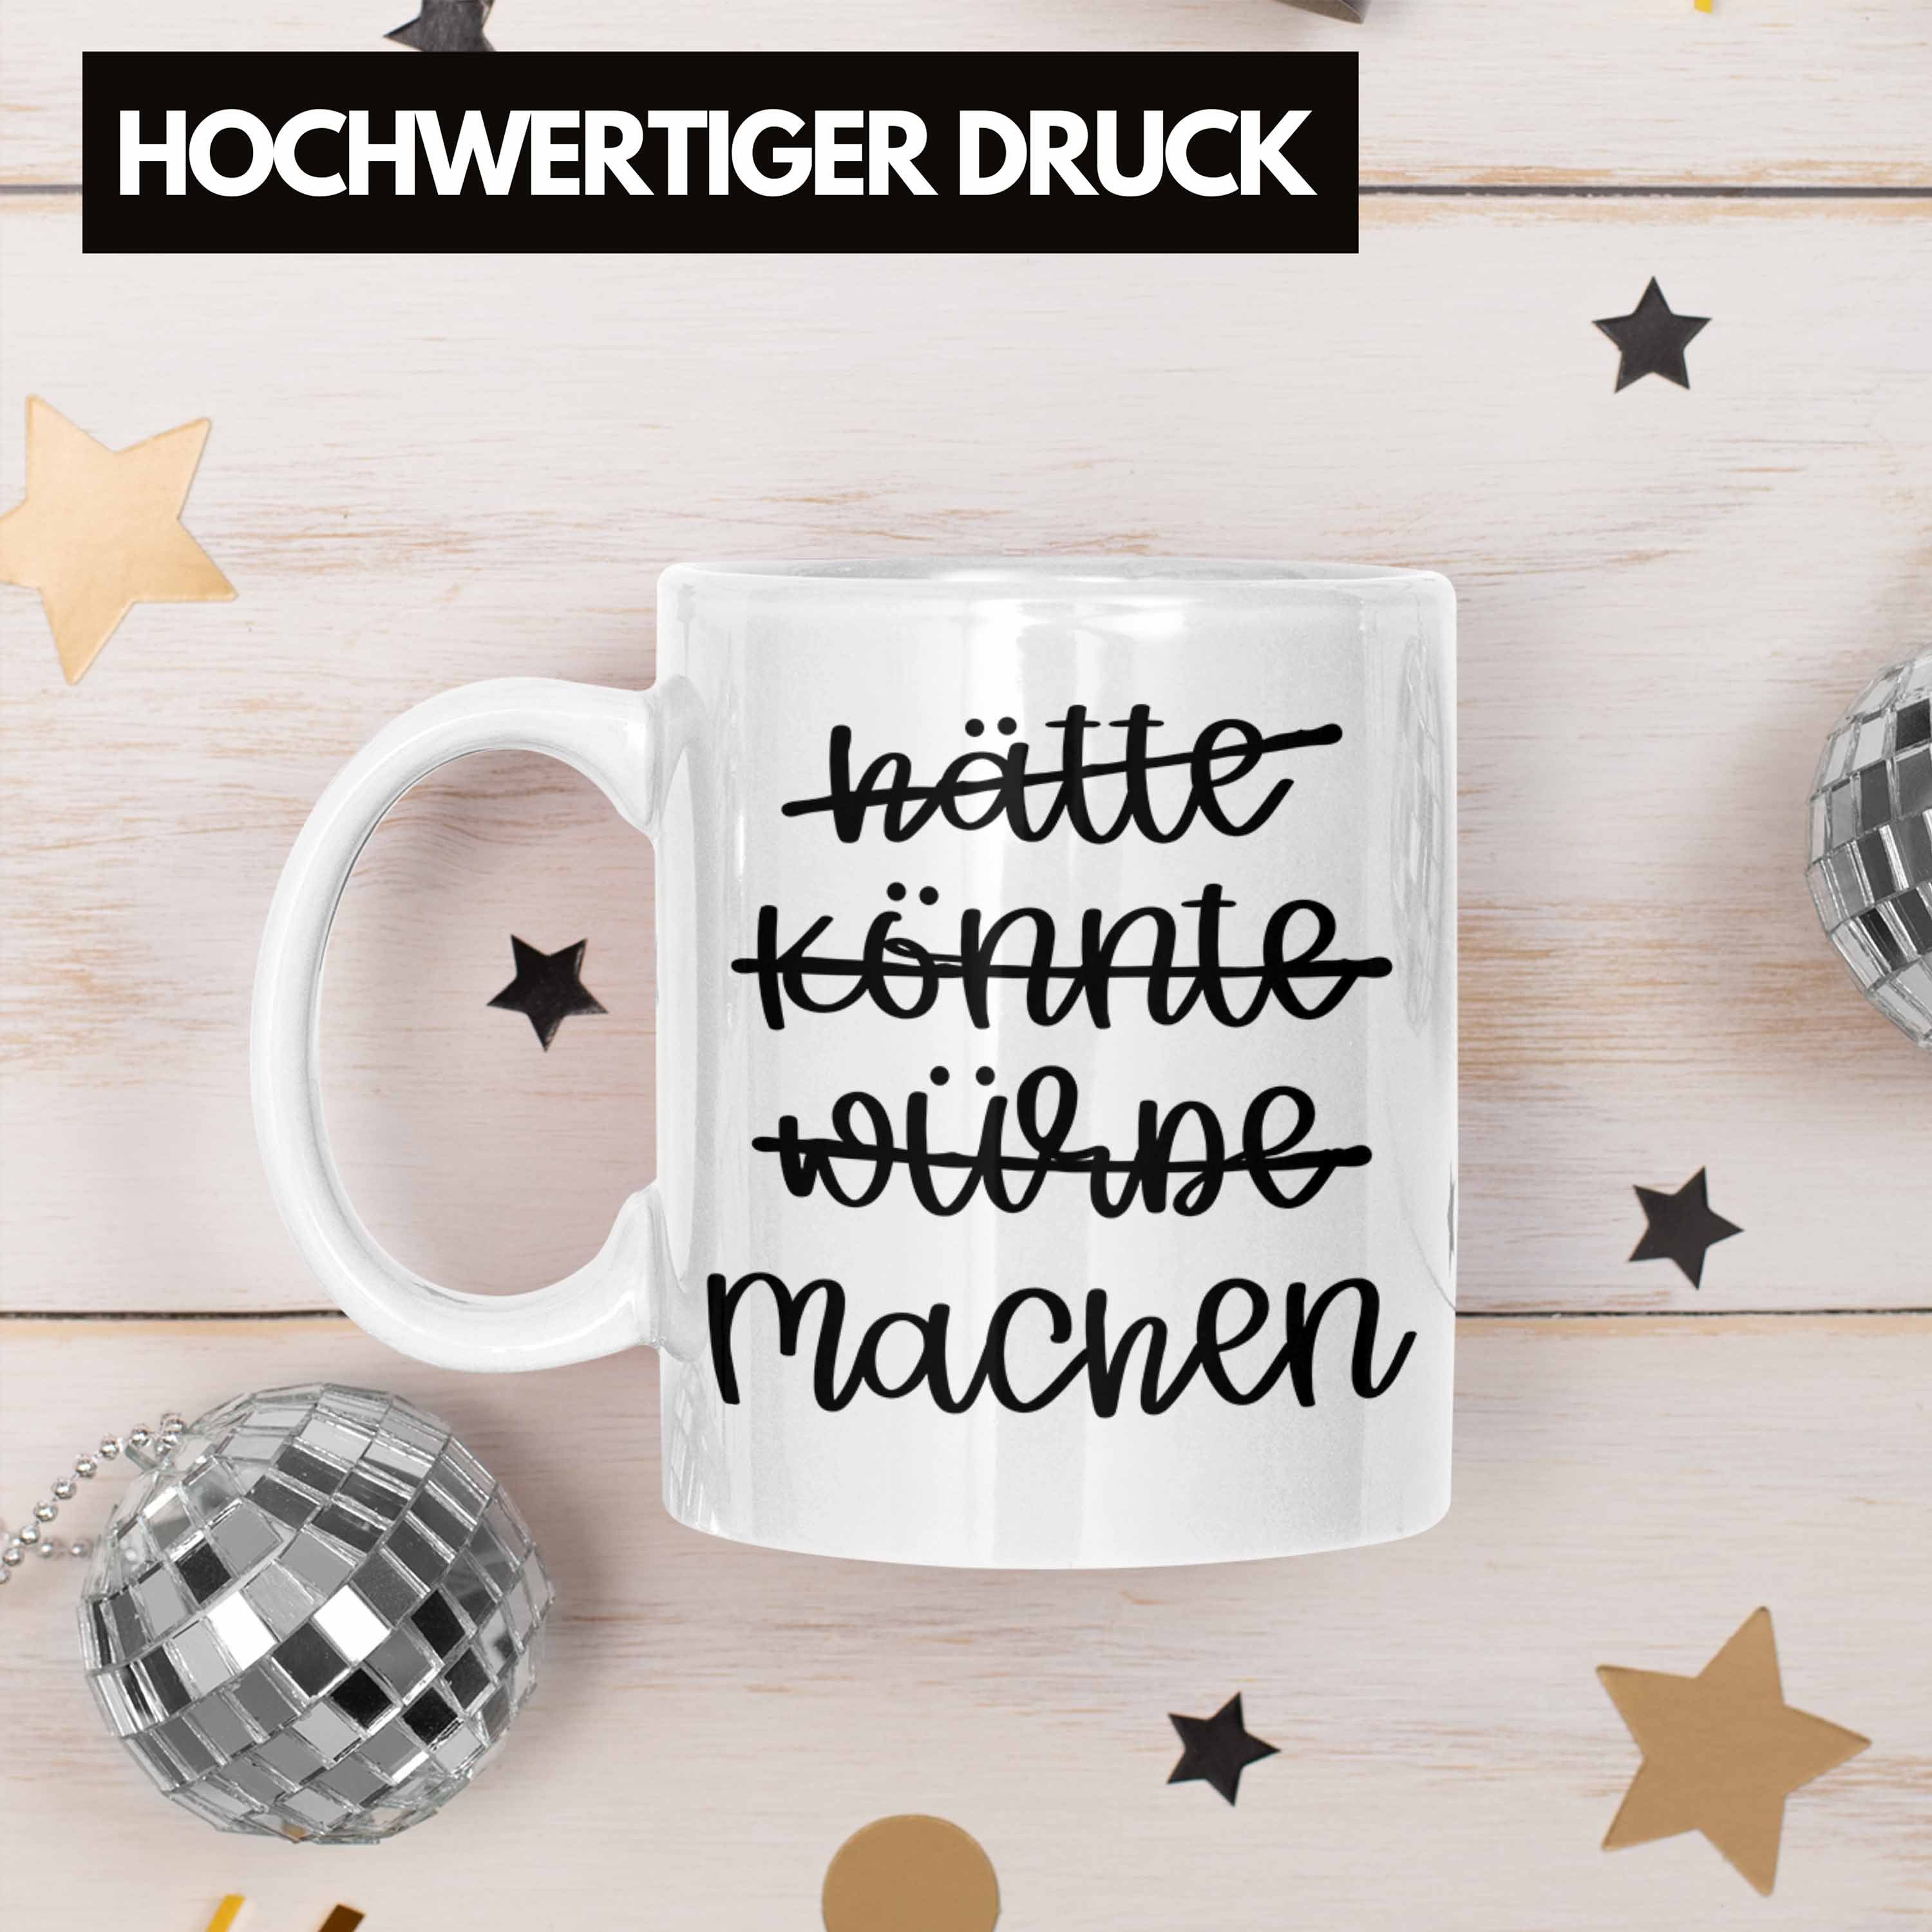 Sprüche Motivation Würde Könnte Selbstständig Trendation Machen Weiss Entrepreneur Tasse - Kaffeetasse Tasse Hätte Trendation